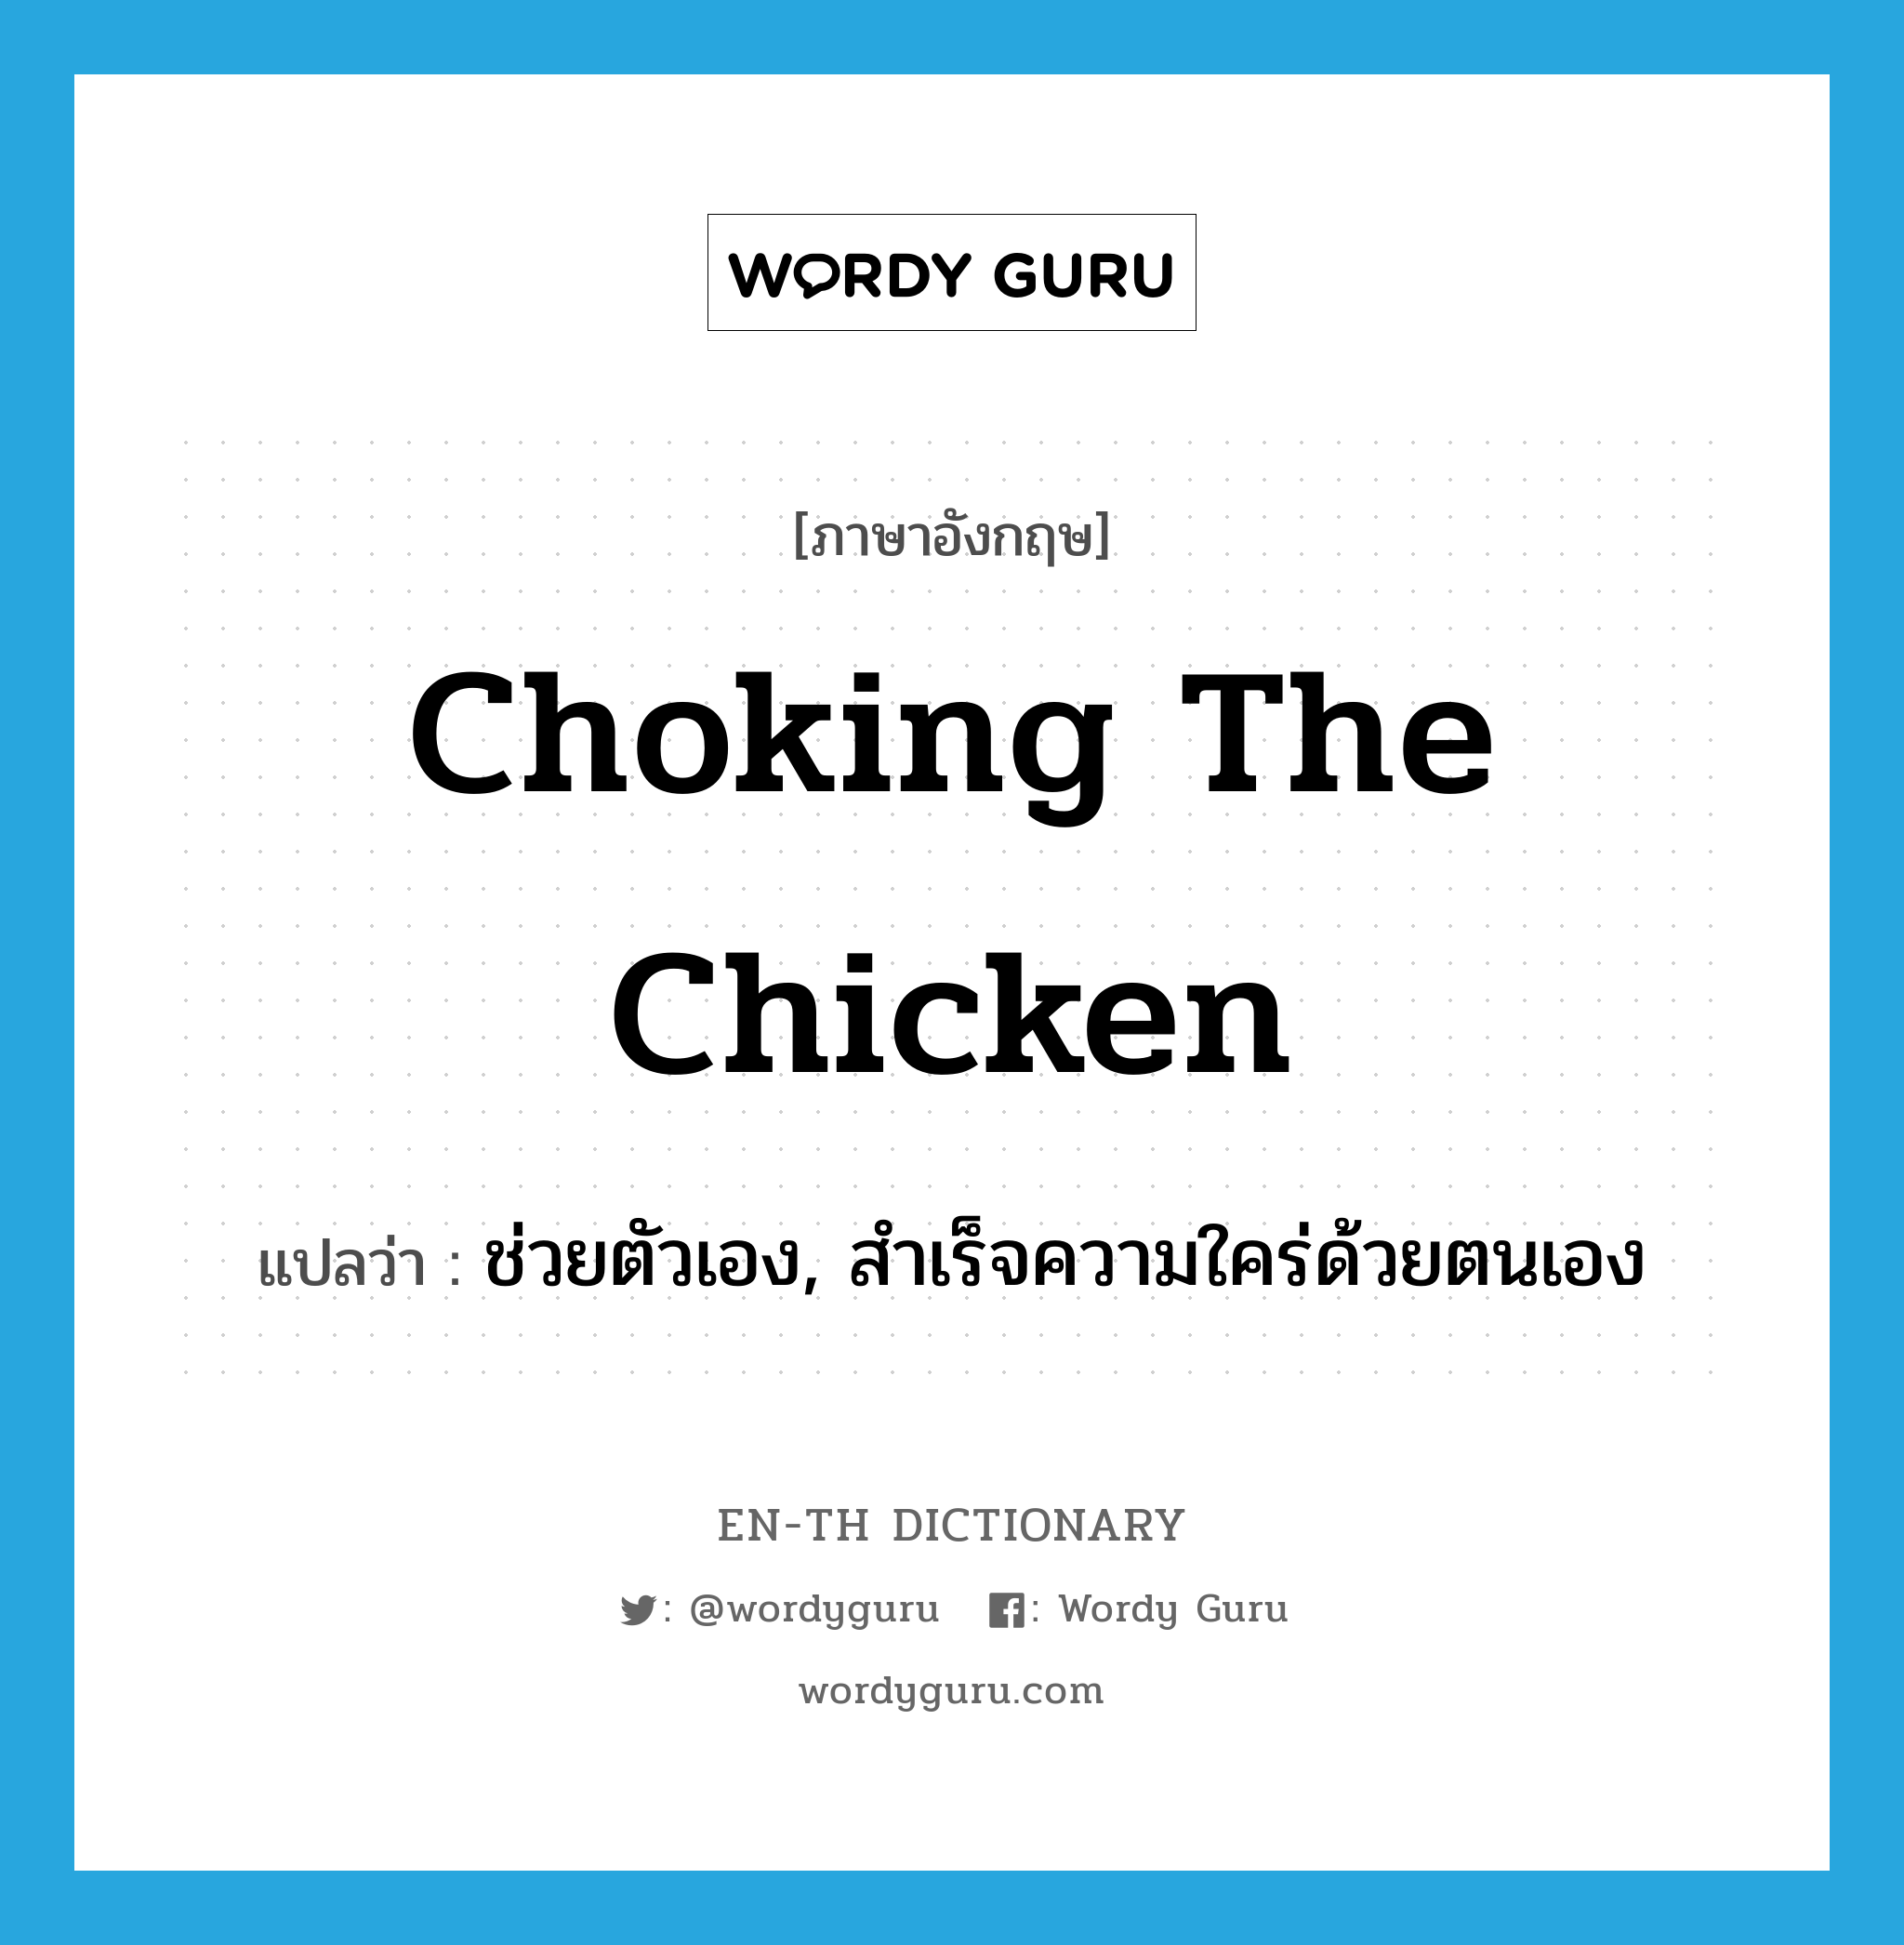 ช่วยตัวเอง, สำเร็จความใคร่ด้วยตนเอง ภาษาอังกฤษ?, คำศัพท์ภาษาอังกฤษ ช่วยตัวเอง, สำเร็จความใคร่ด้วยตนเอง แปลว่า choking the chicken ประเภท SL หมวด SL